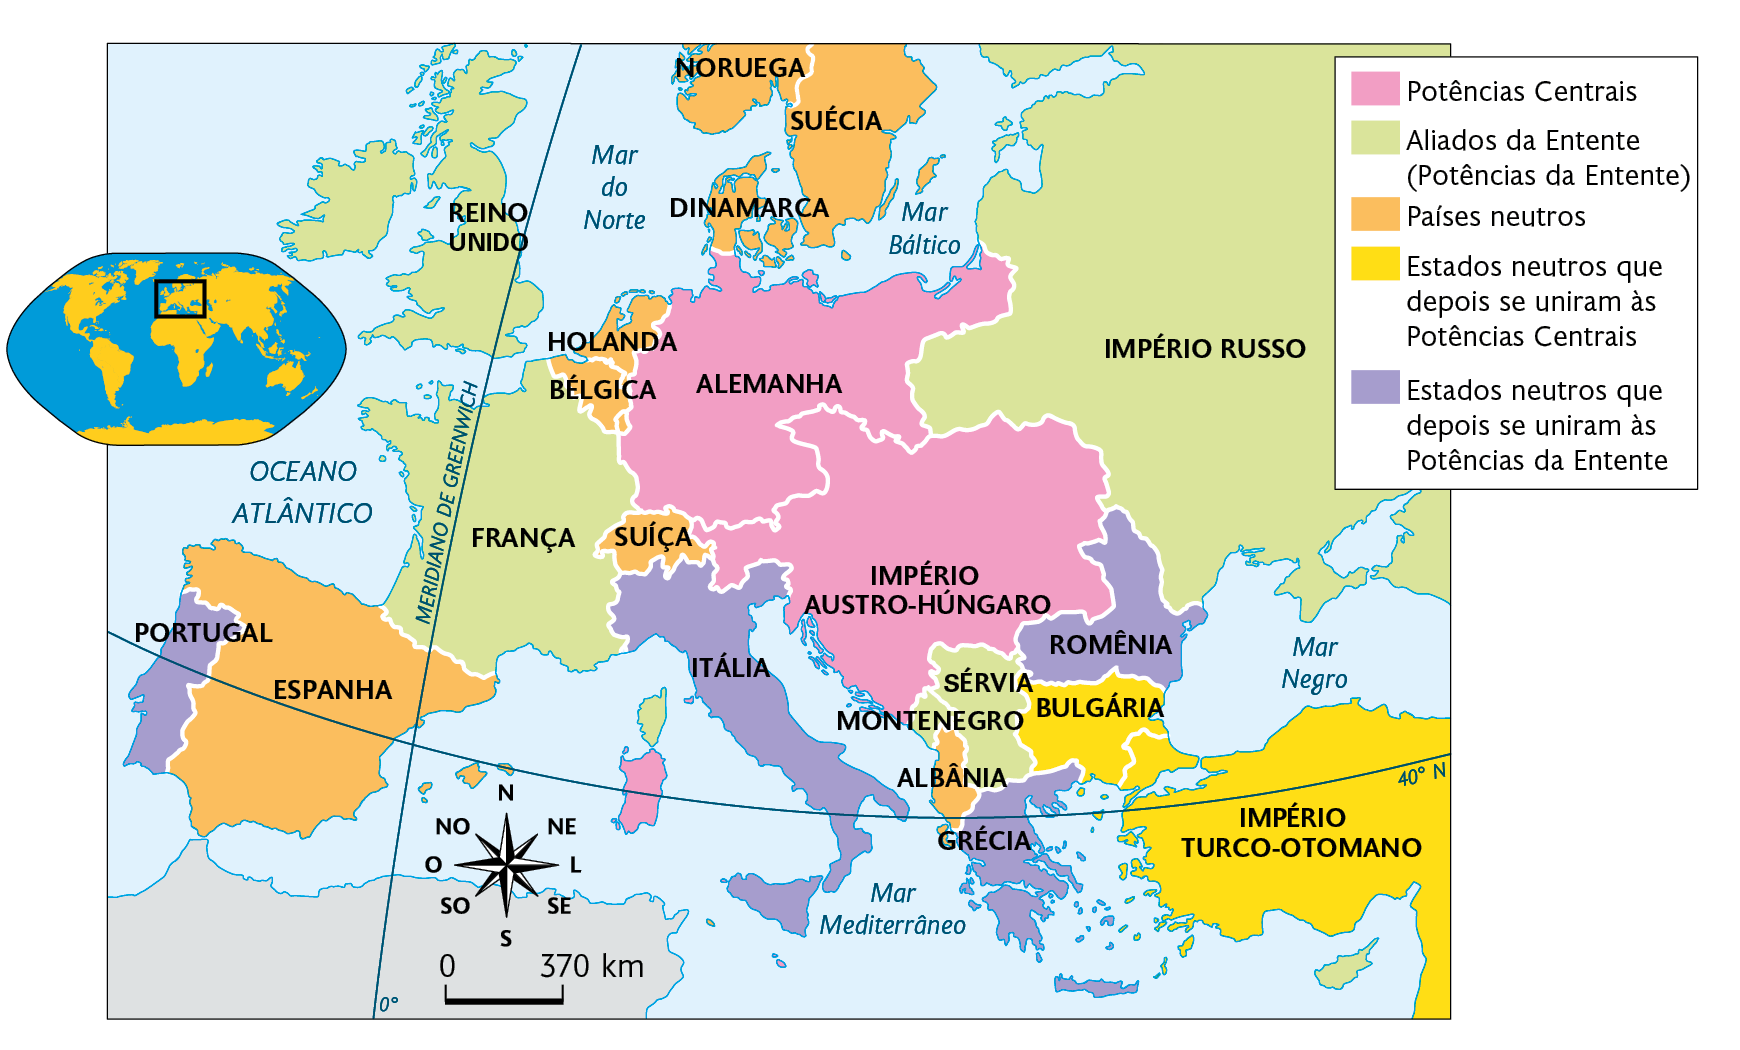 Mapa. Os blocos na Primeira Guerra Mundial em 1914. Mapa territorial destacado conforme a legenda: Potências Centrais: ALEMANHA e IMPÉRIO AUSTRO-HÚNGARO. Aliados da Entente (Potências da Entente): IMPÉRIO RUSSO, SÉRVIA, MONTENEGRO, FRANÇA, e REINO UNIDO. Países neutros: ESPANHA, SUÍÇA, HOLANDA, BÉLGICA, DINAMARCA, NORUEGA, SUÉCIA e ALBÂNIA. Estados neutros que depois se uniram às Potências Centrais: BULGÁRIA e IMPÉRIO TURCO-OTOMANO. Estados neutros que depois se uniram às Potências da Entente: PORTUGAL, ITÁLIA, ROMÊNIA e GRÉCIA. No canto superior, à esquerda, planisfério destacando parte da Europa e África. Abaixo, representação da rosa dos ventos e escala de 370 quilômetros por centímetro.